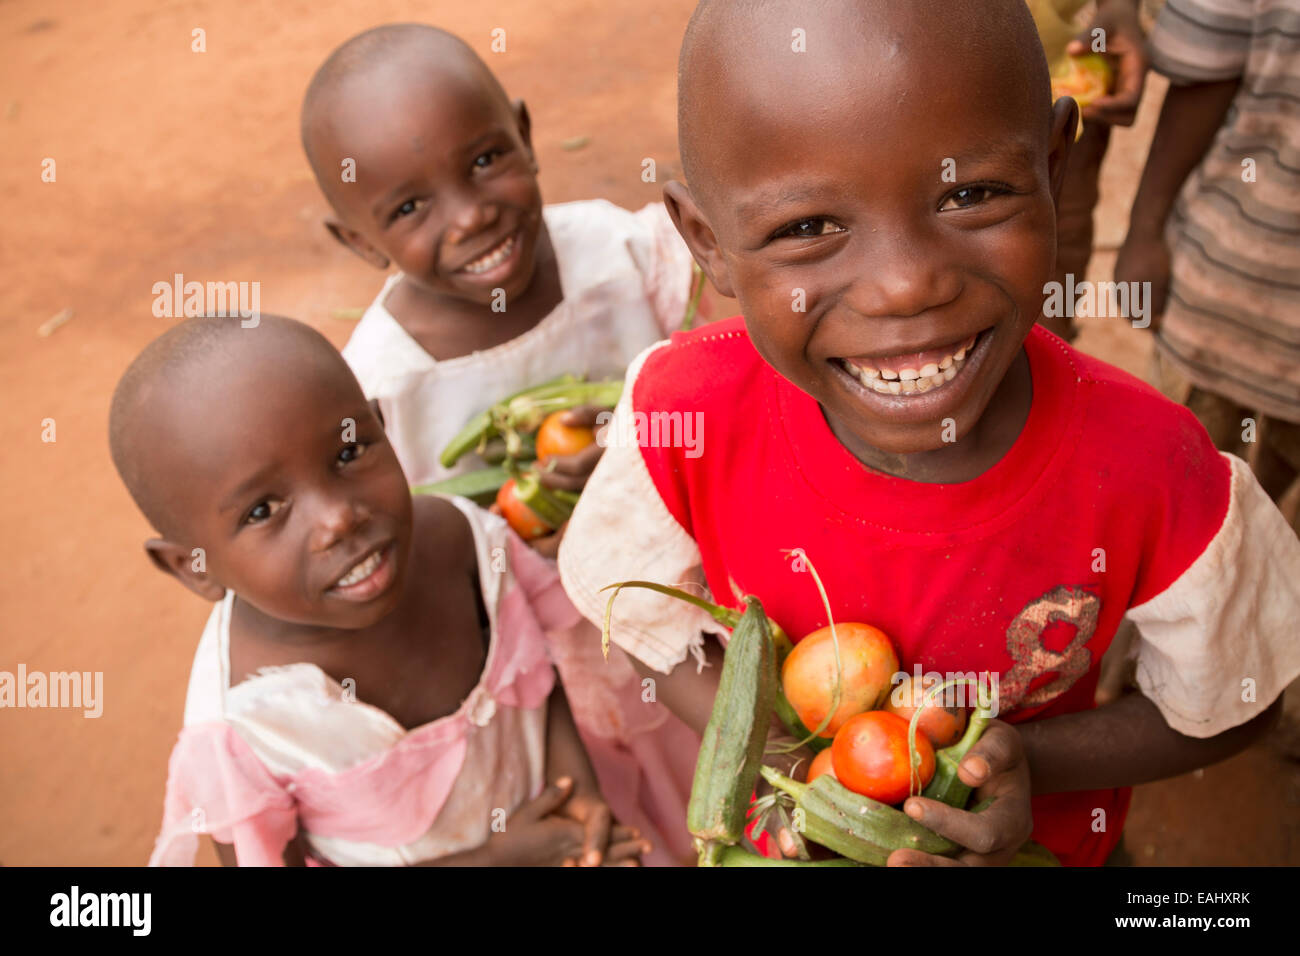 Children hold freshly harvested vegetables in Makueni County, Kenya, East Africa. Stock Photo